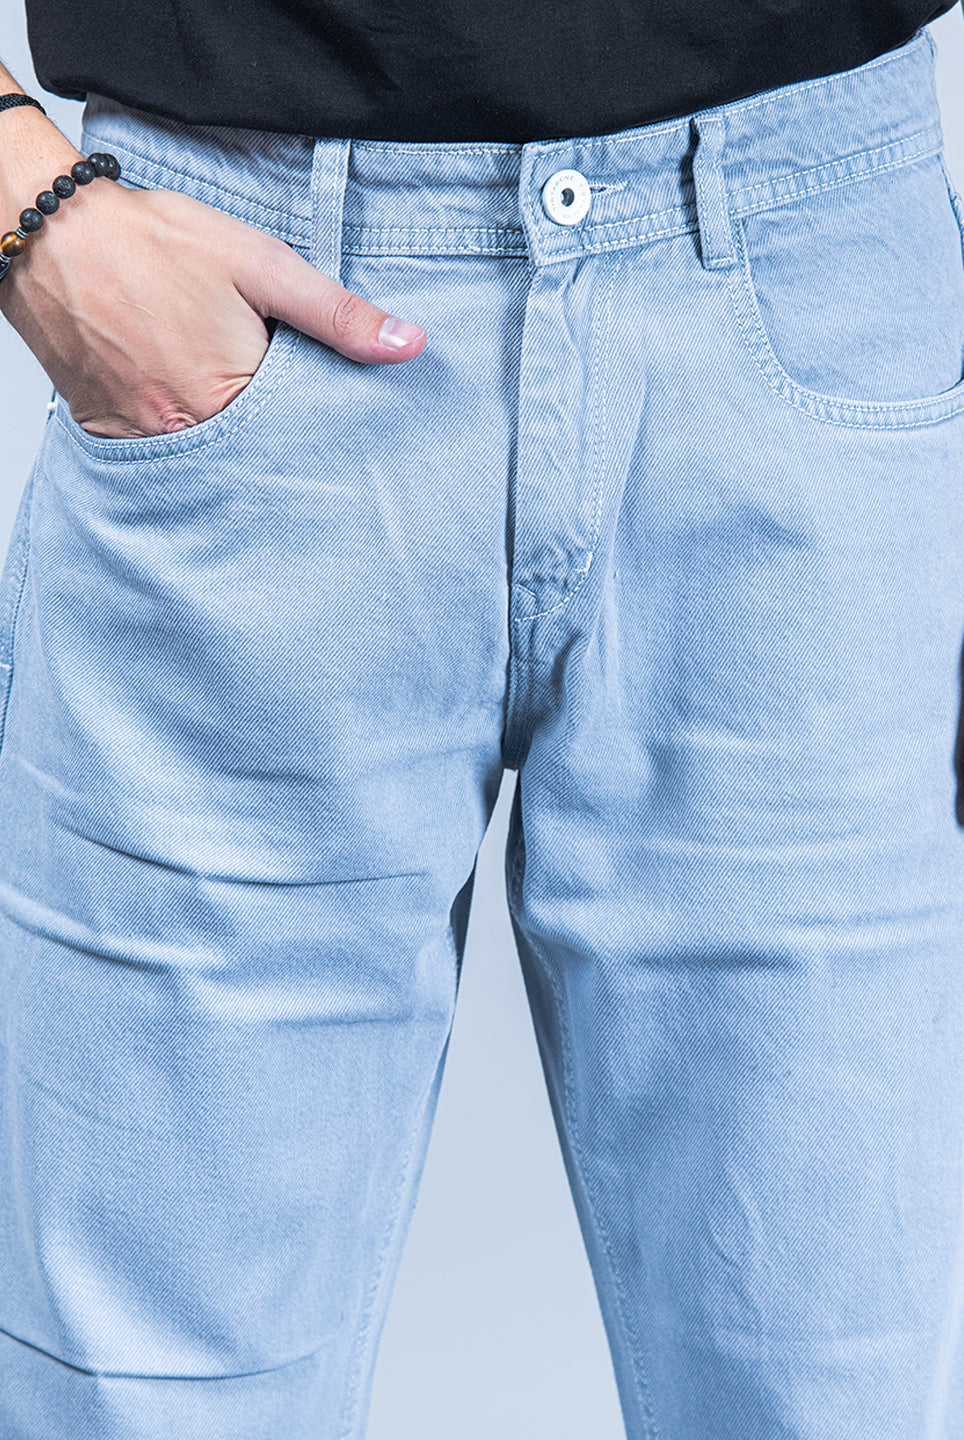 denim jeans for men 